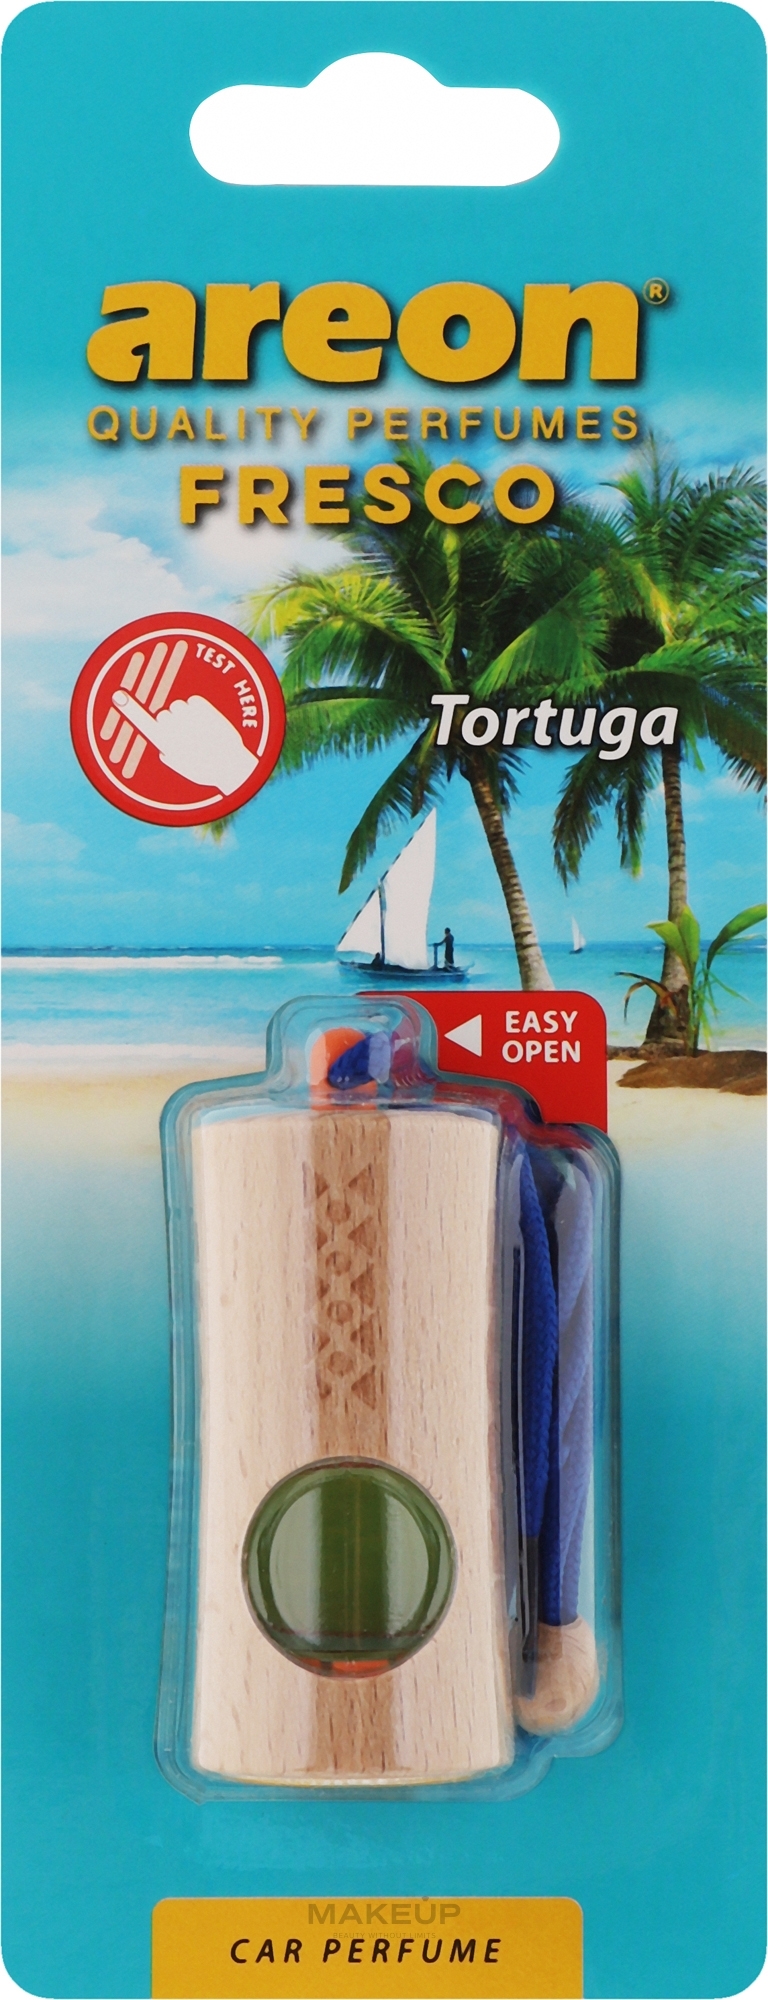 Odświeżacz powietrza do samochodu Tortuga - Areon Fresco New Tortuga Car Perfume — Zdjęcie 4 ml